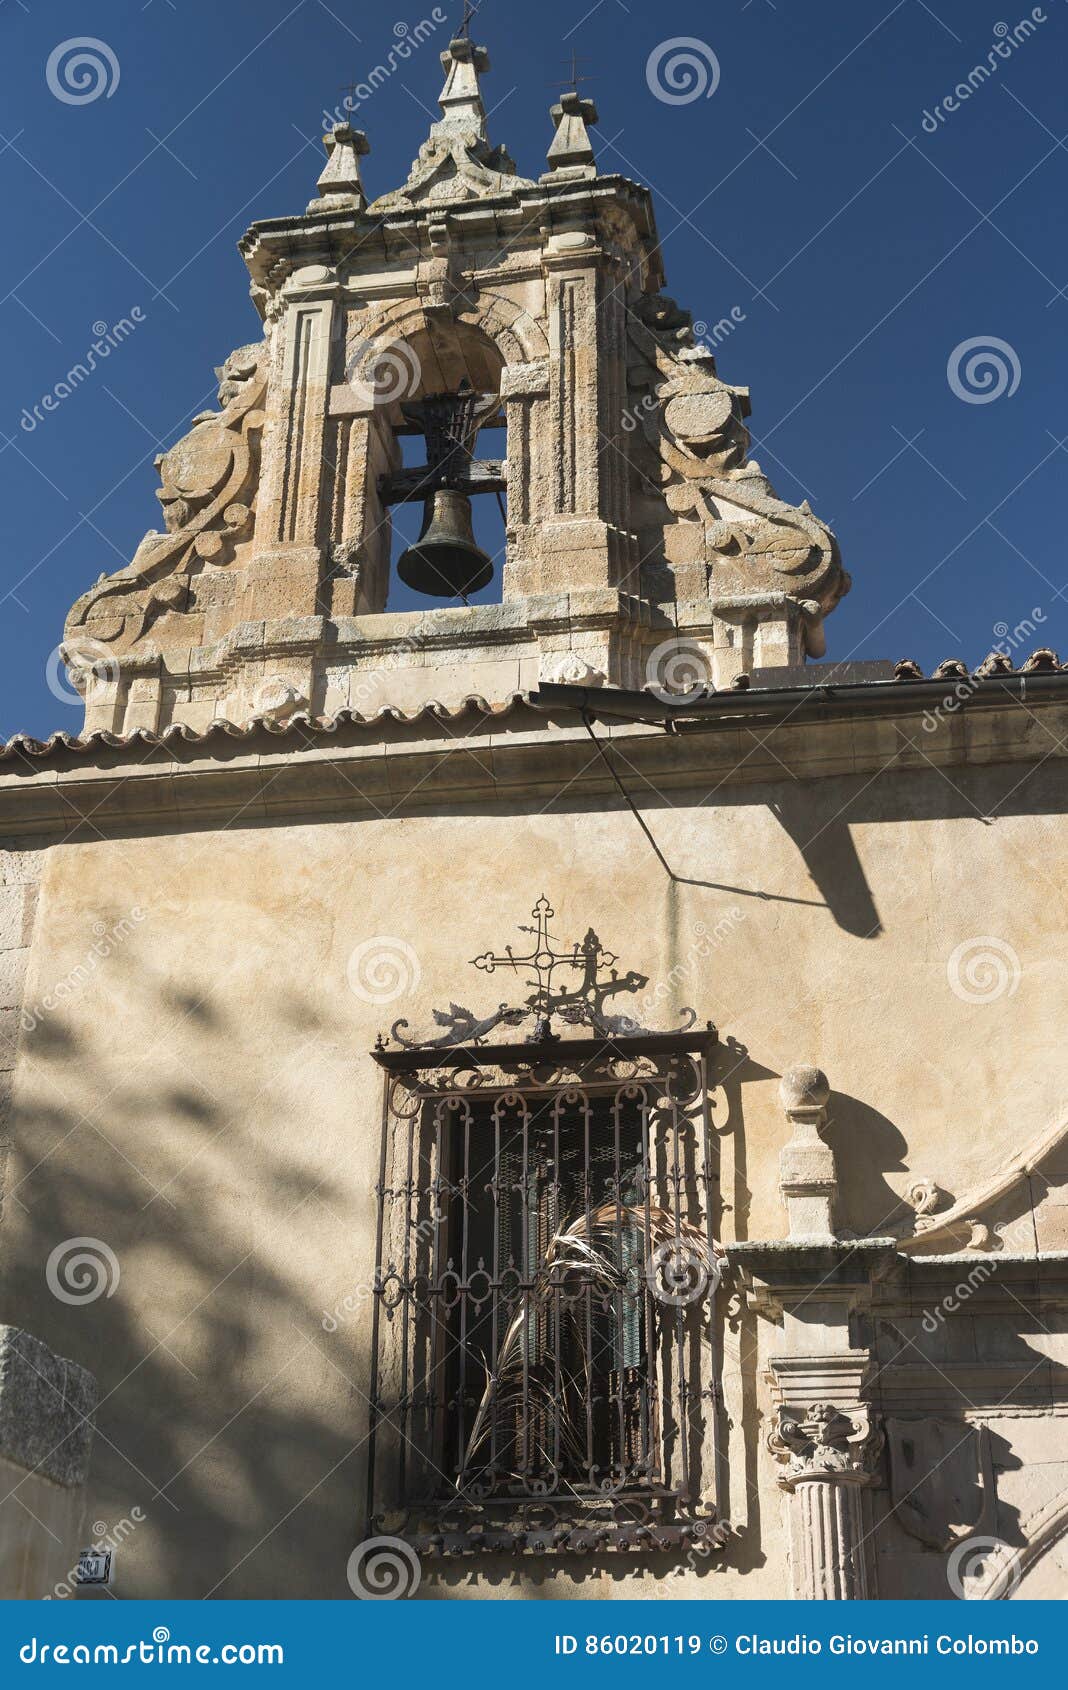 salamanca spain: convento de la anunciacion, historic church